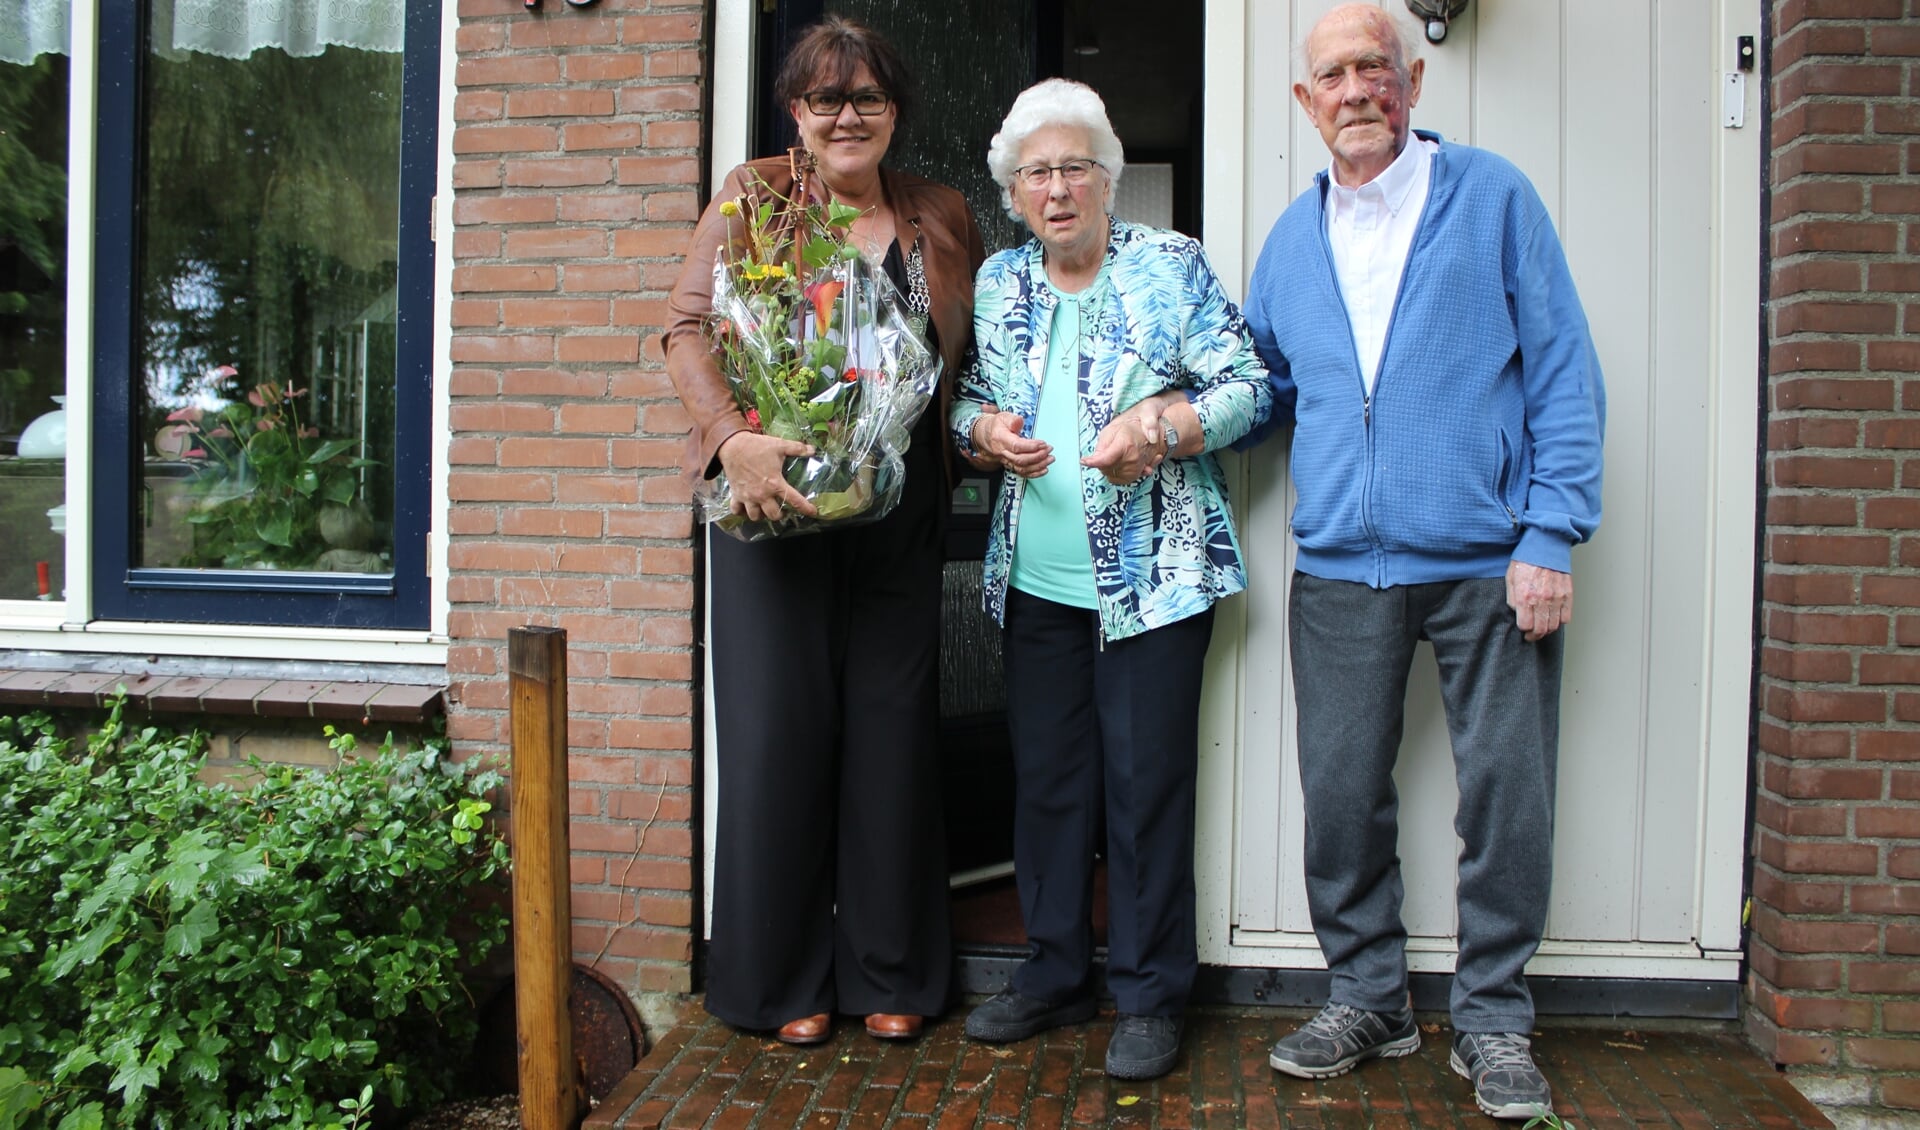 Locoburgemeester Hanneke van de Gevel bezocht het echtpaar en luisterde aandachtig naar het hele levensverhaal.